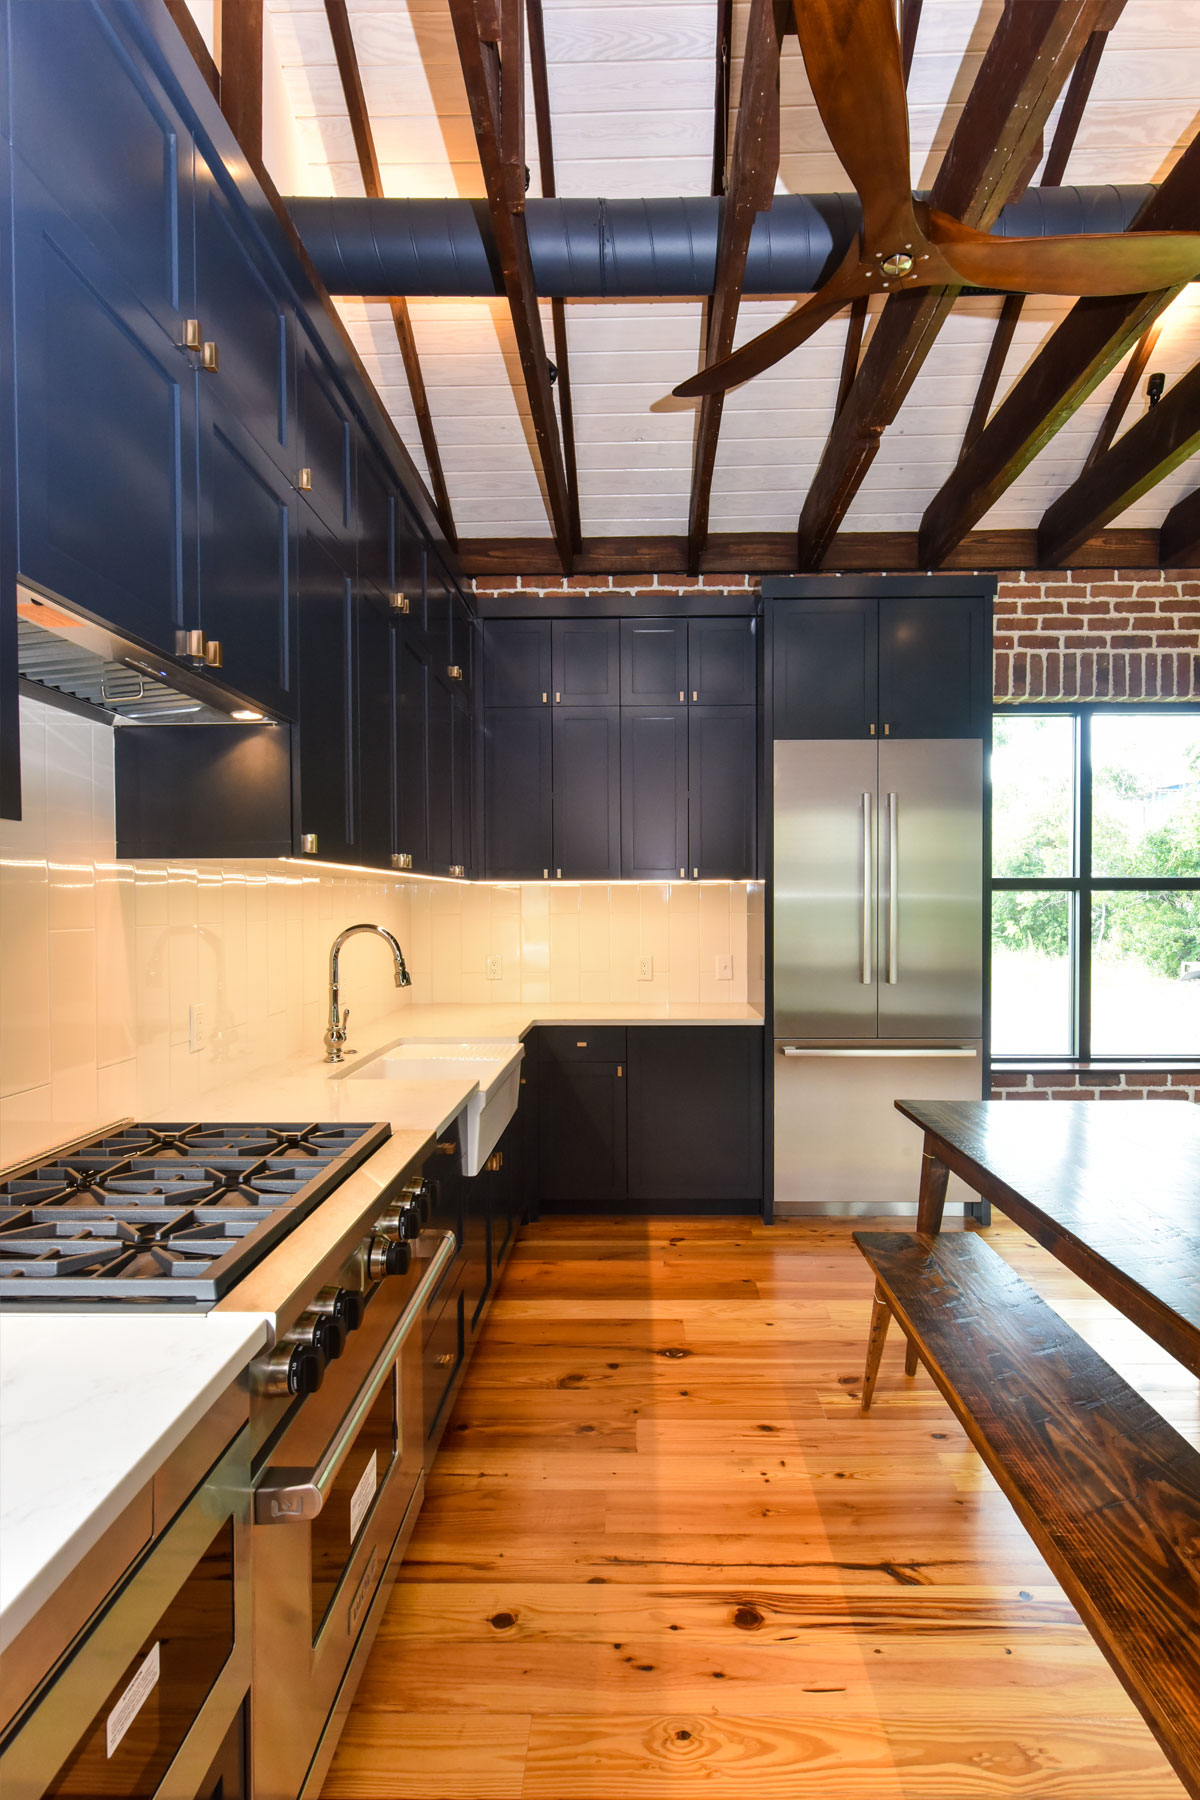 Dark navy cabinets in modern coastal kitchen design